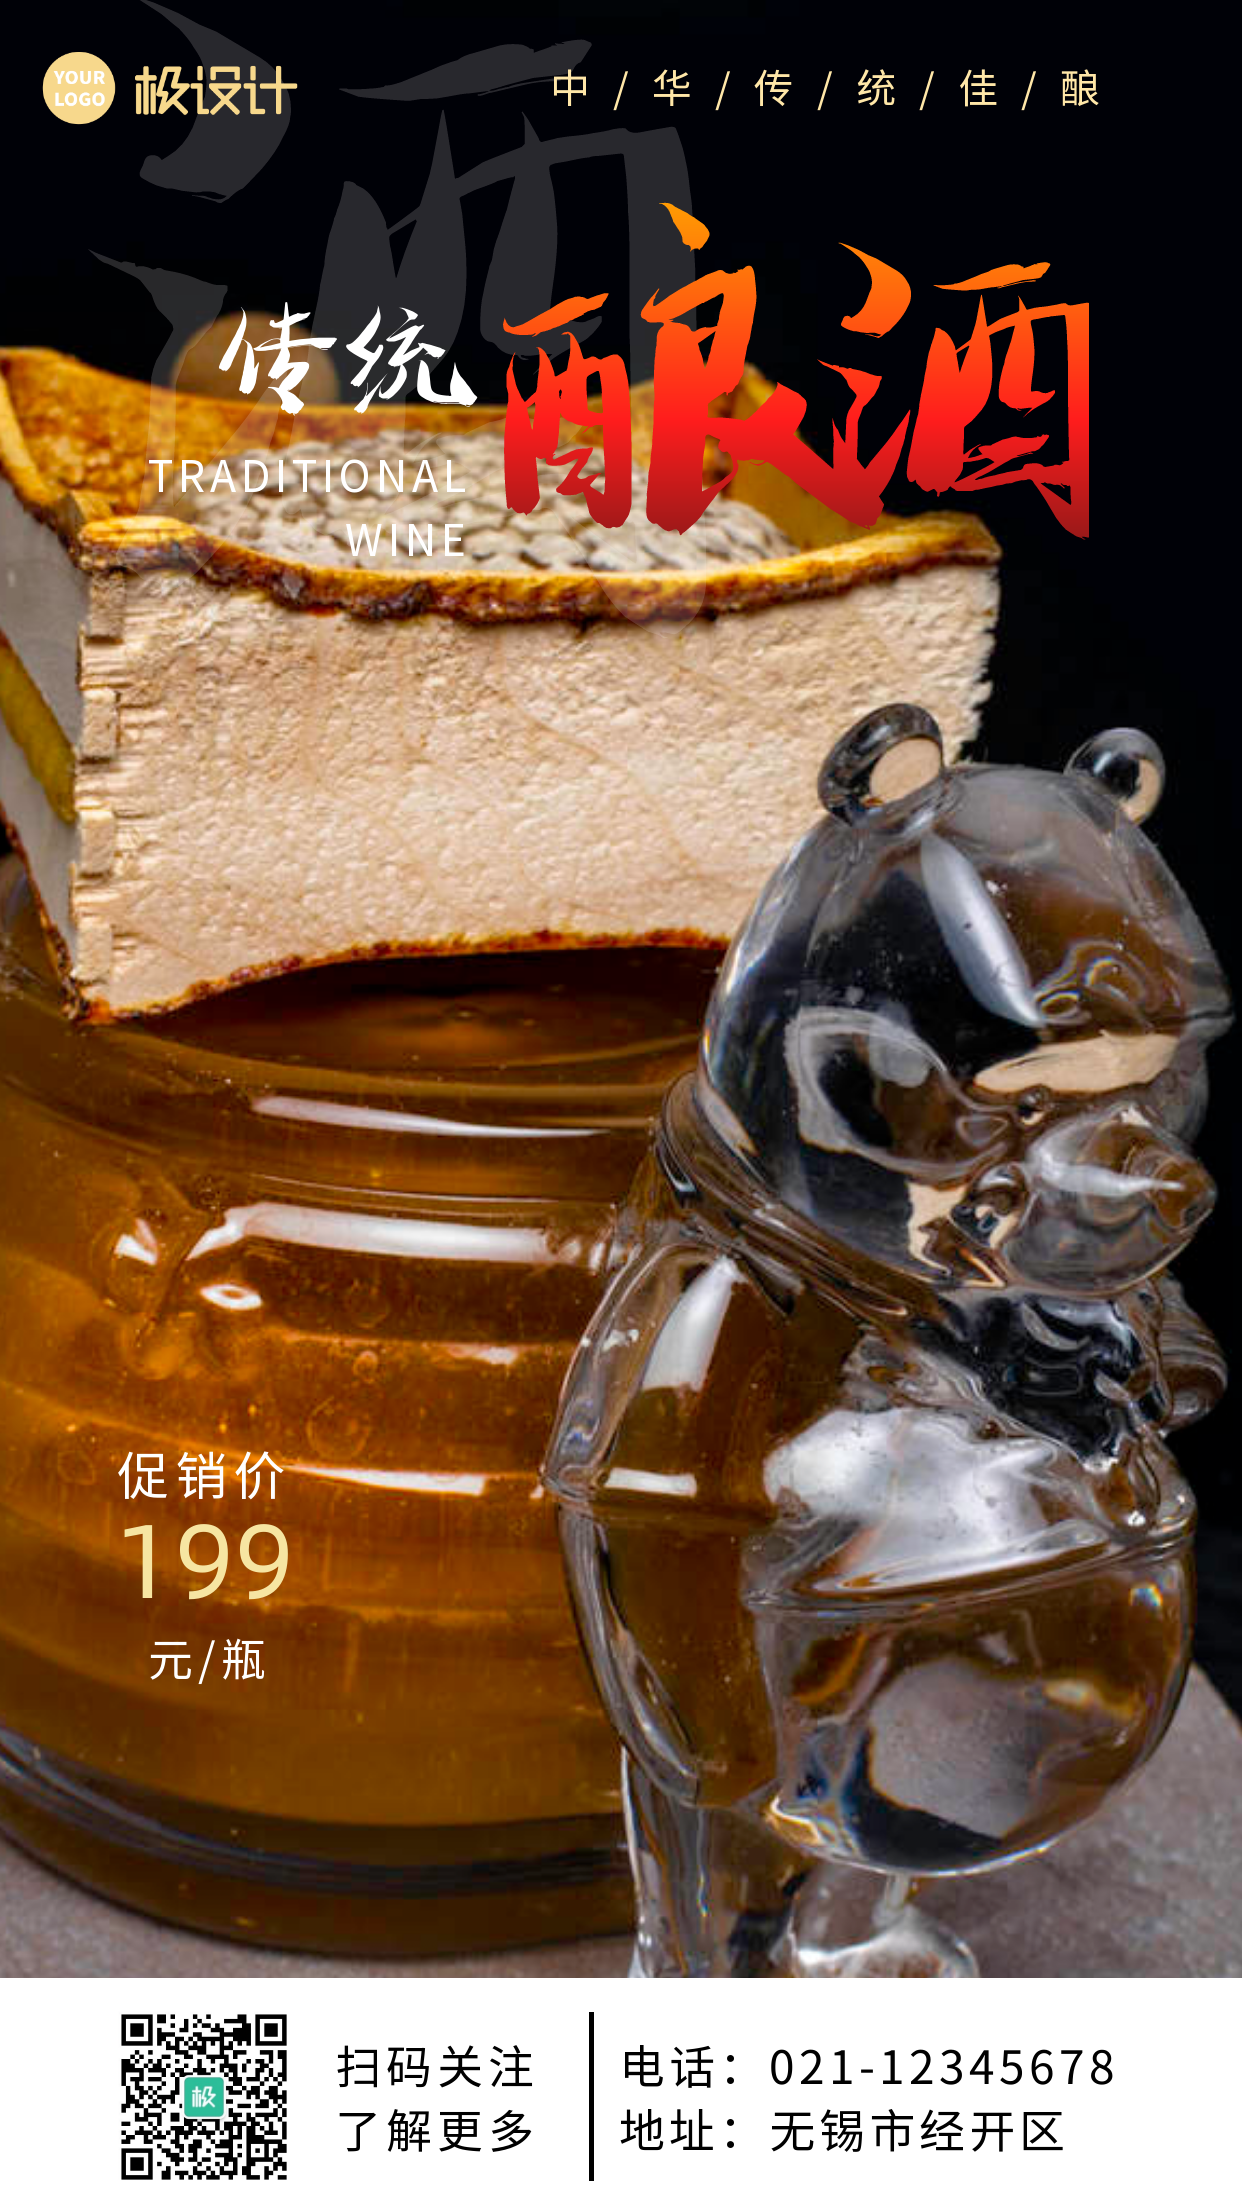 传统酿酒土黄色配图简约大气宣传营销海报